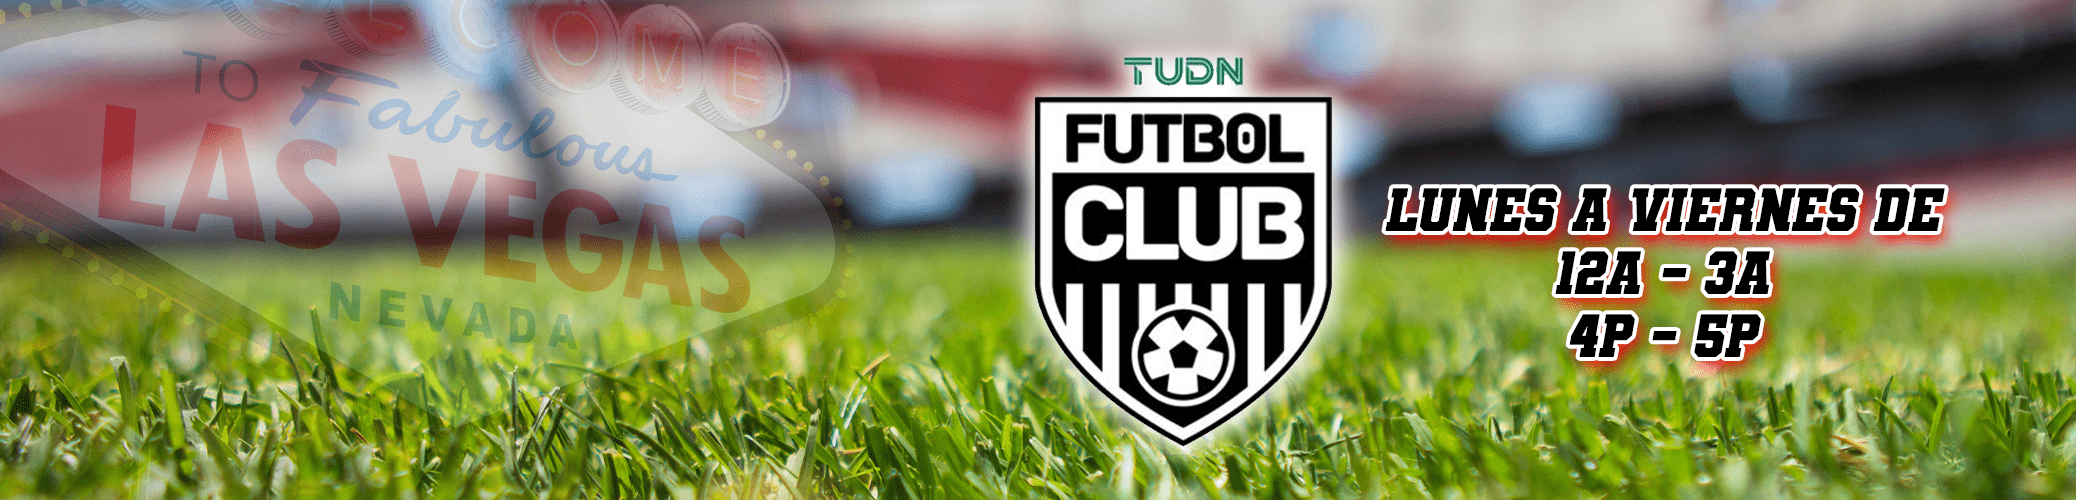 Futbol-Club-Banner